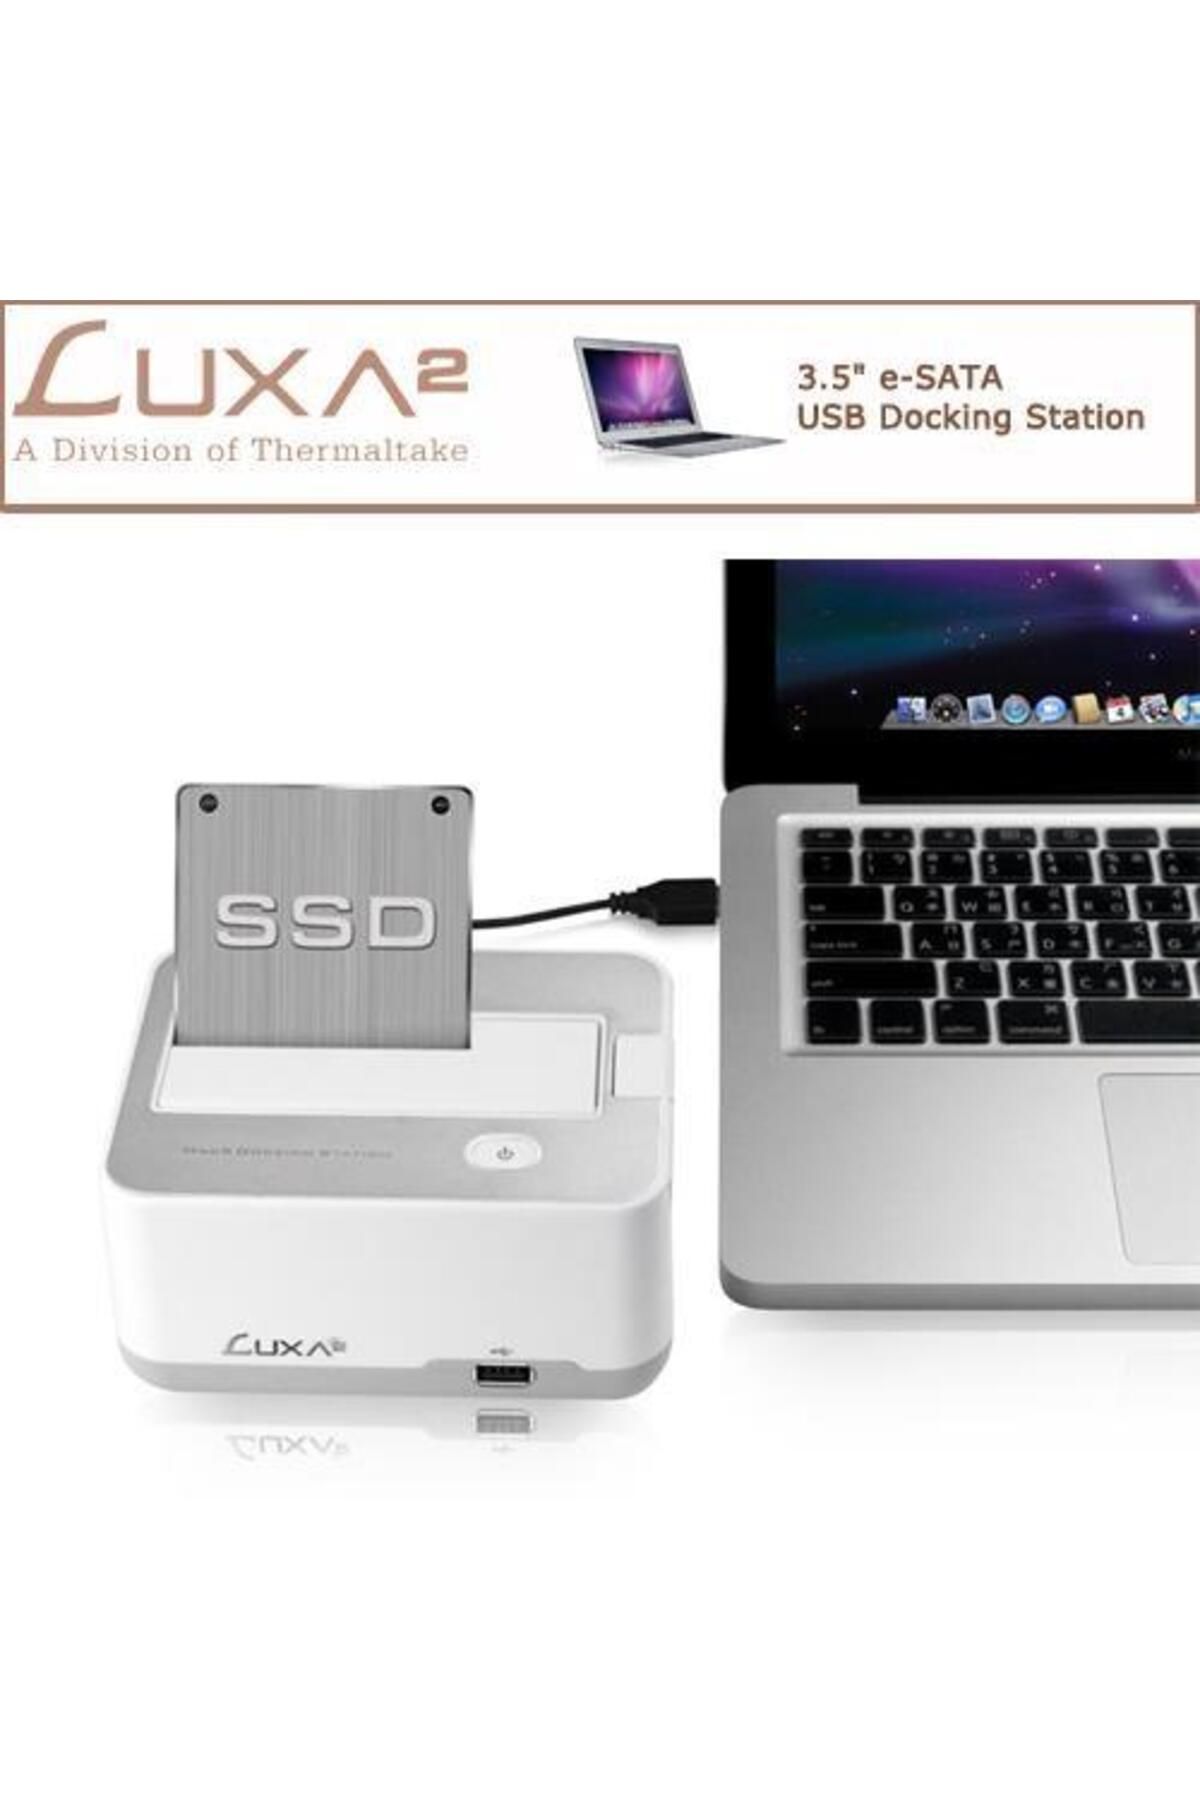 Luxa2 S2 Macx 3.5" E-sata Usb Docking Station